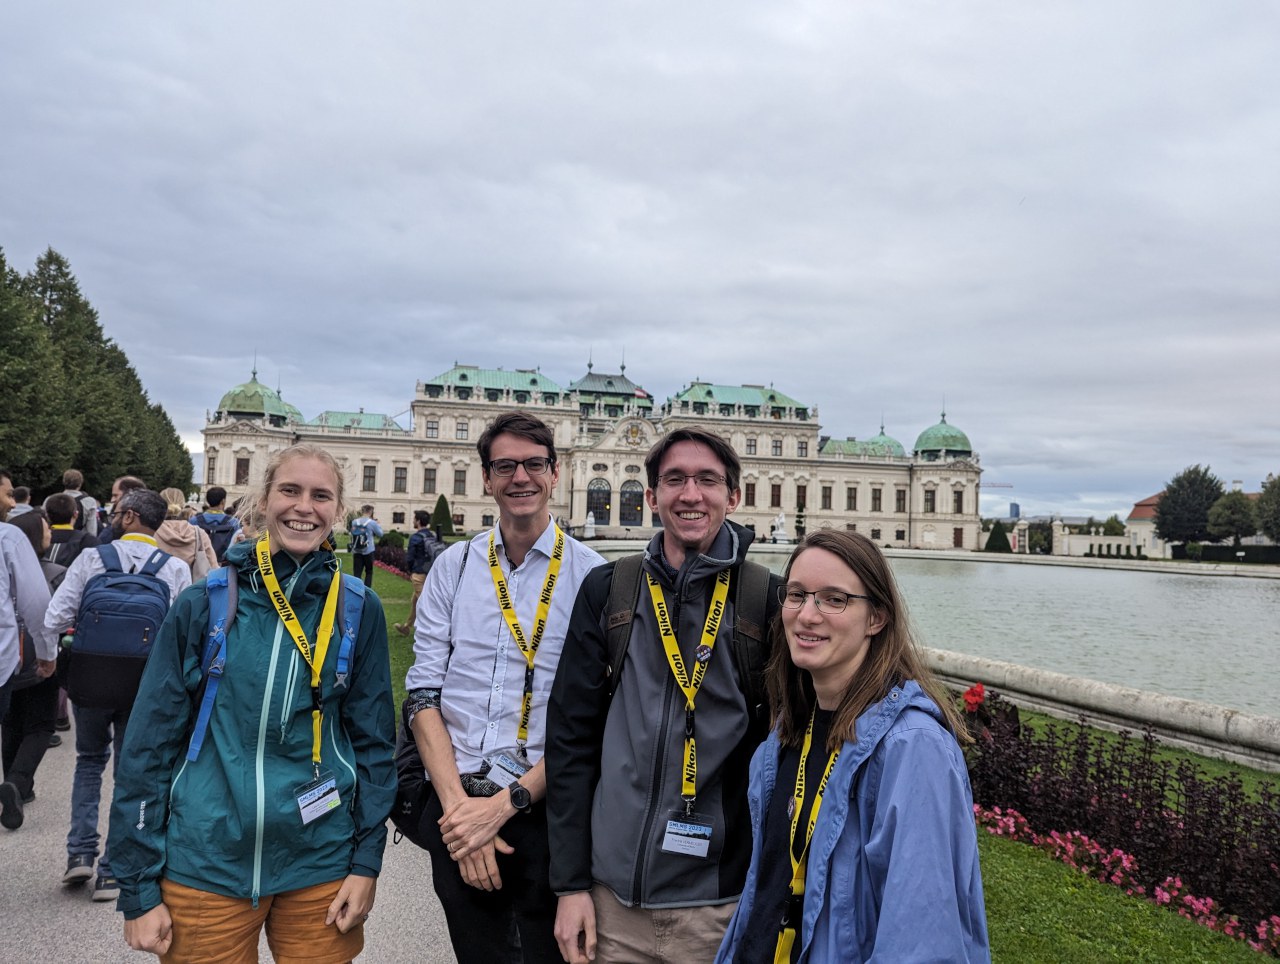 Konferenz-Ausflug zum Schloss Belvedere in Wien, Österreich